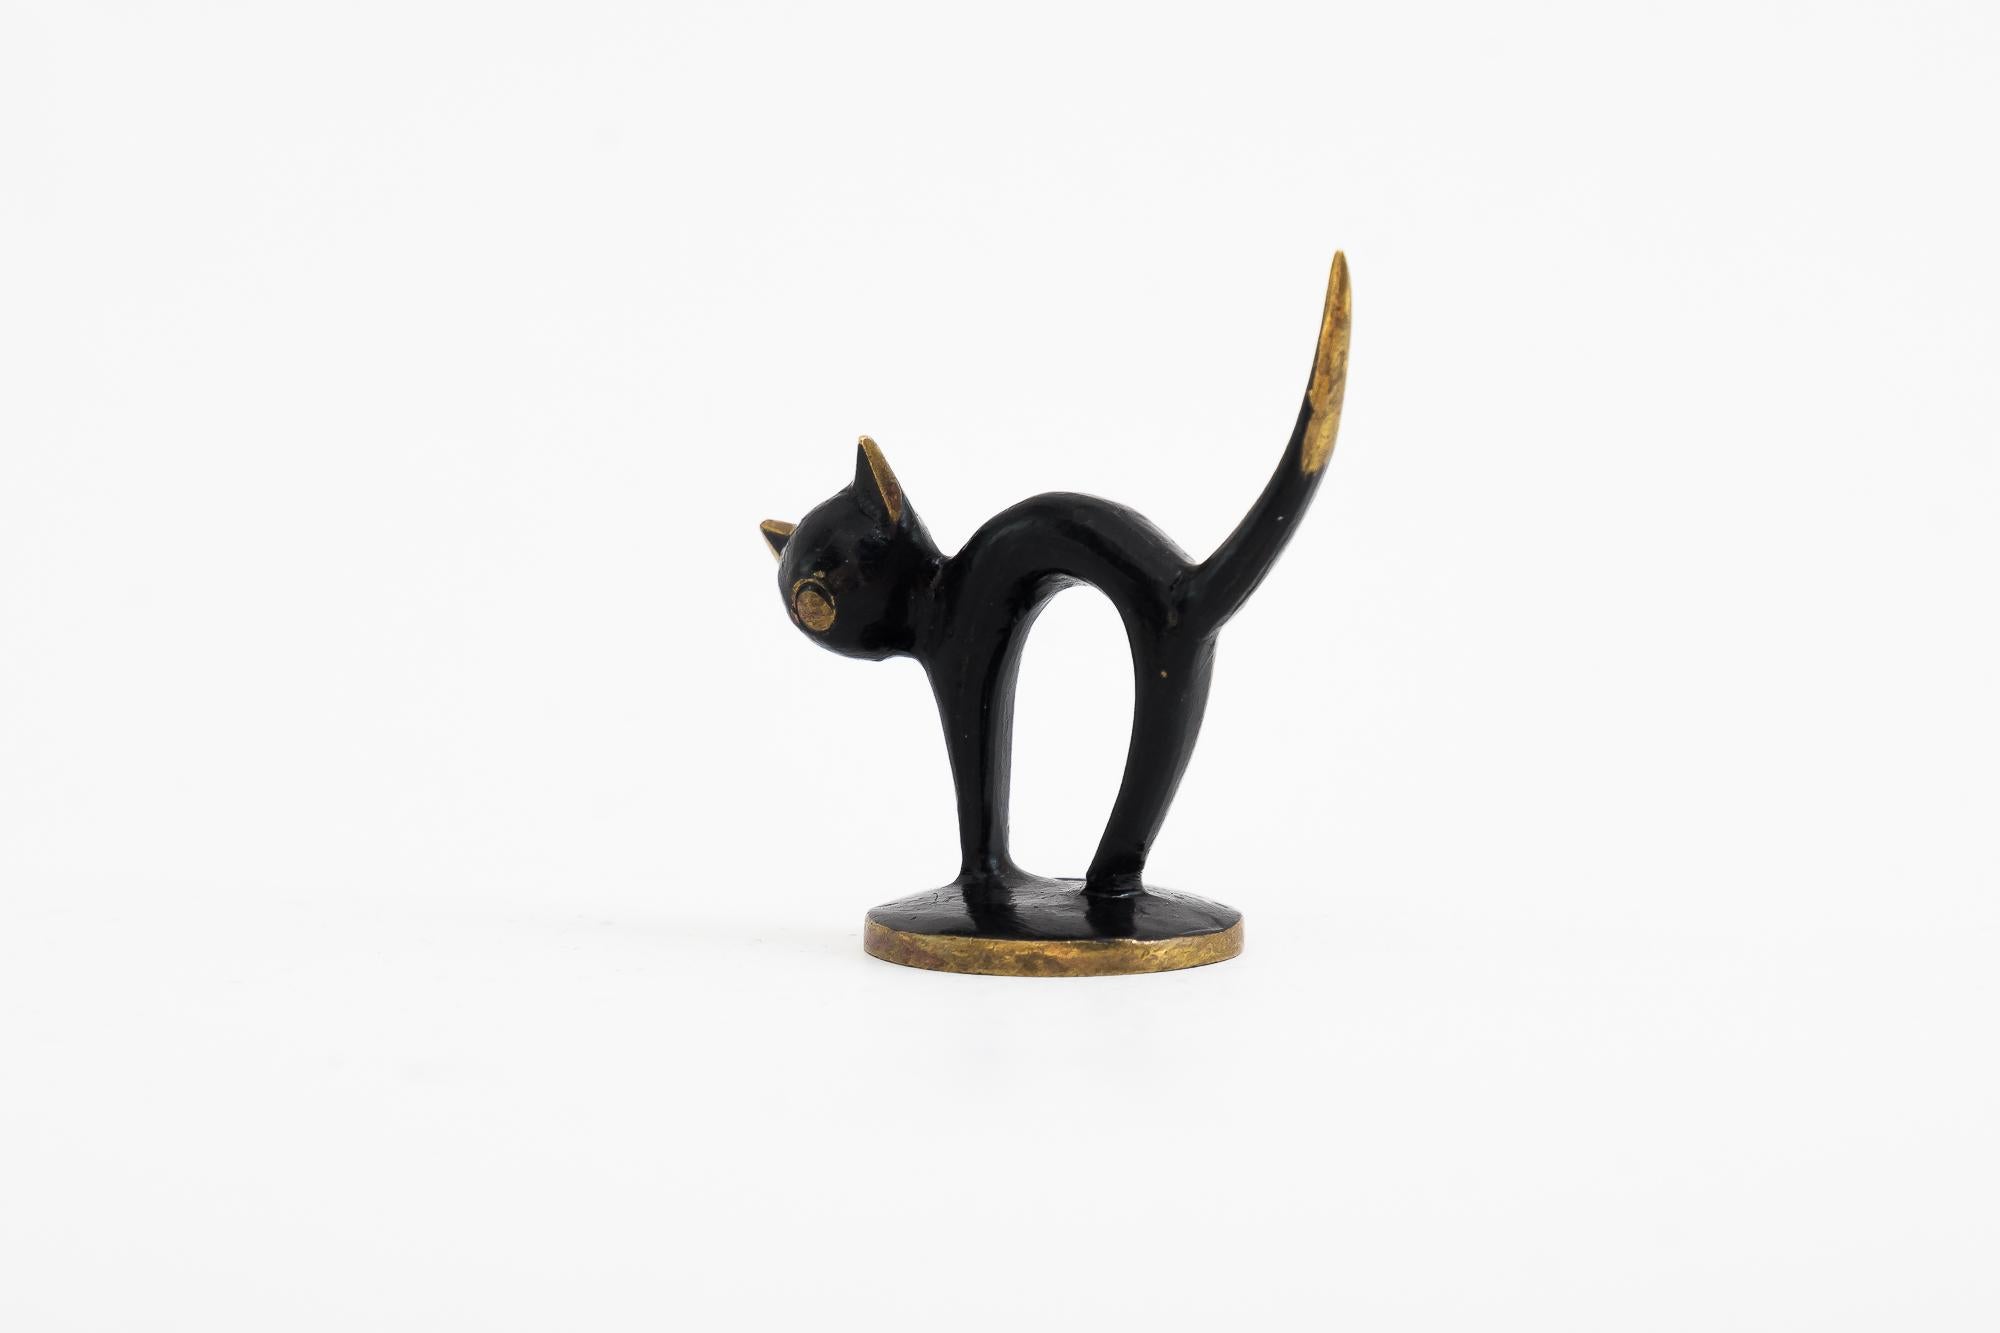 Figurine de chat de Walter Bosse, Vienne, vers les années 1950
État original.